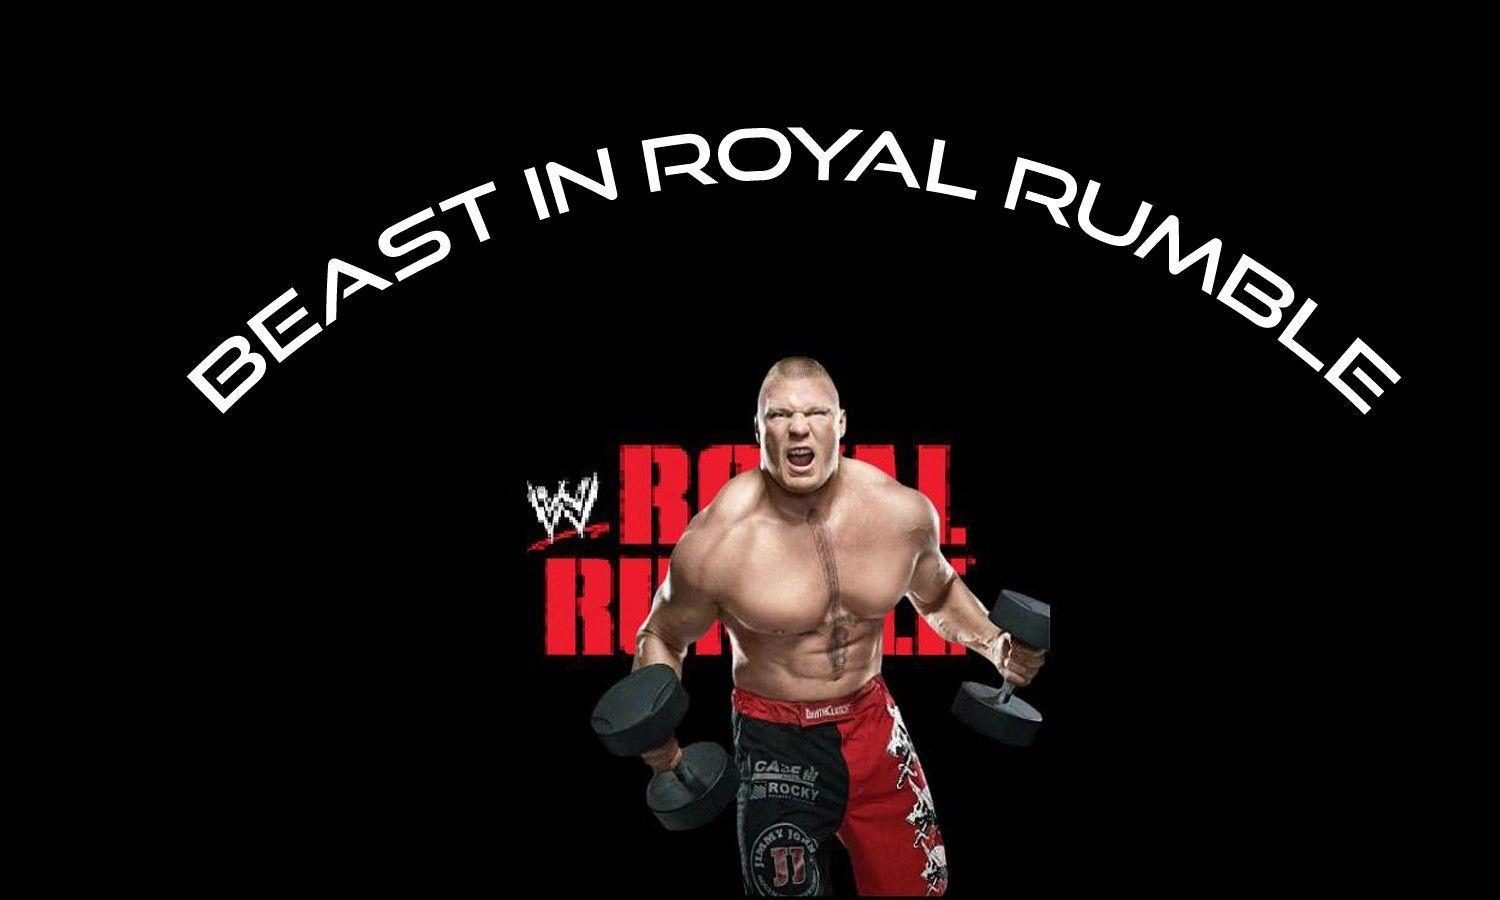 Brock Lesnar WWE Royal Rumble 2015 poster HD Wallpaper